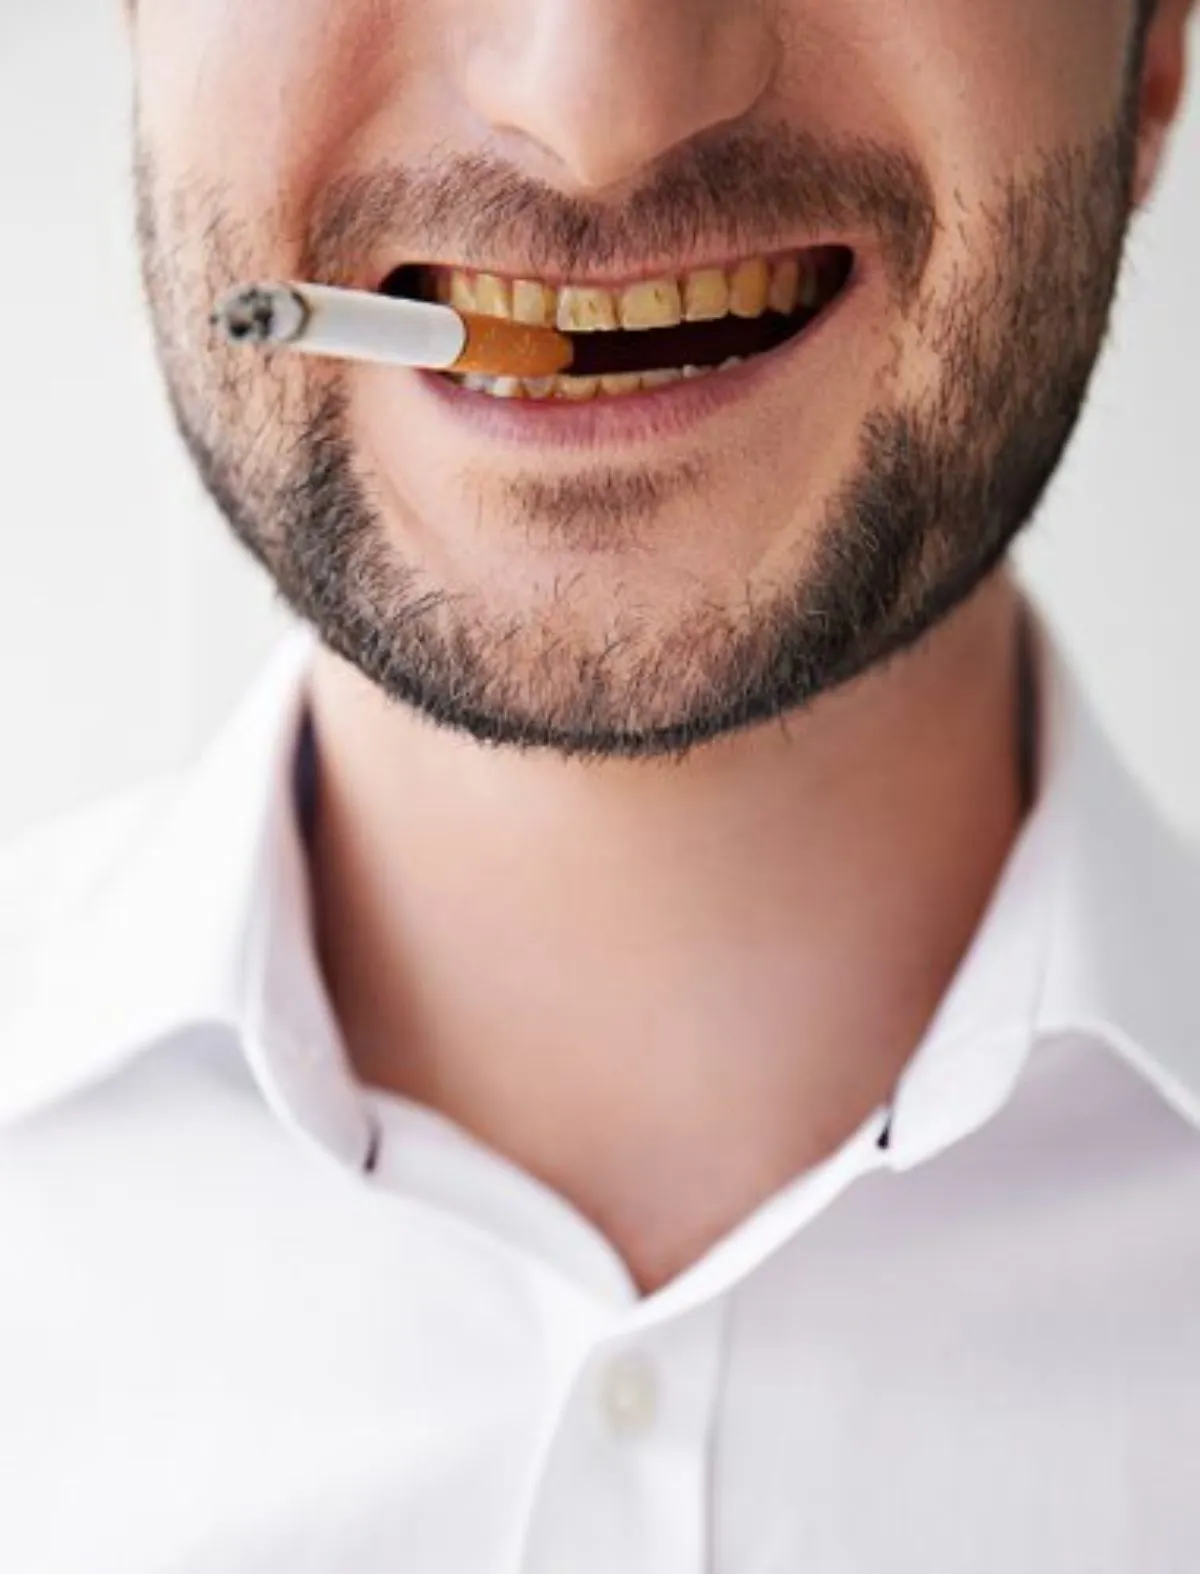 Hút thuốc lá tăng nguy cơ tạo vệt ố vàng trên răng